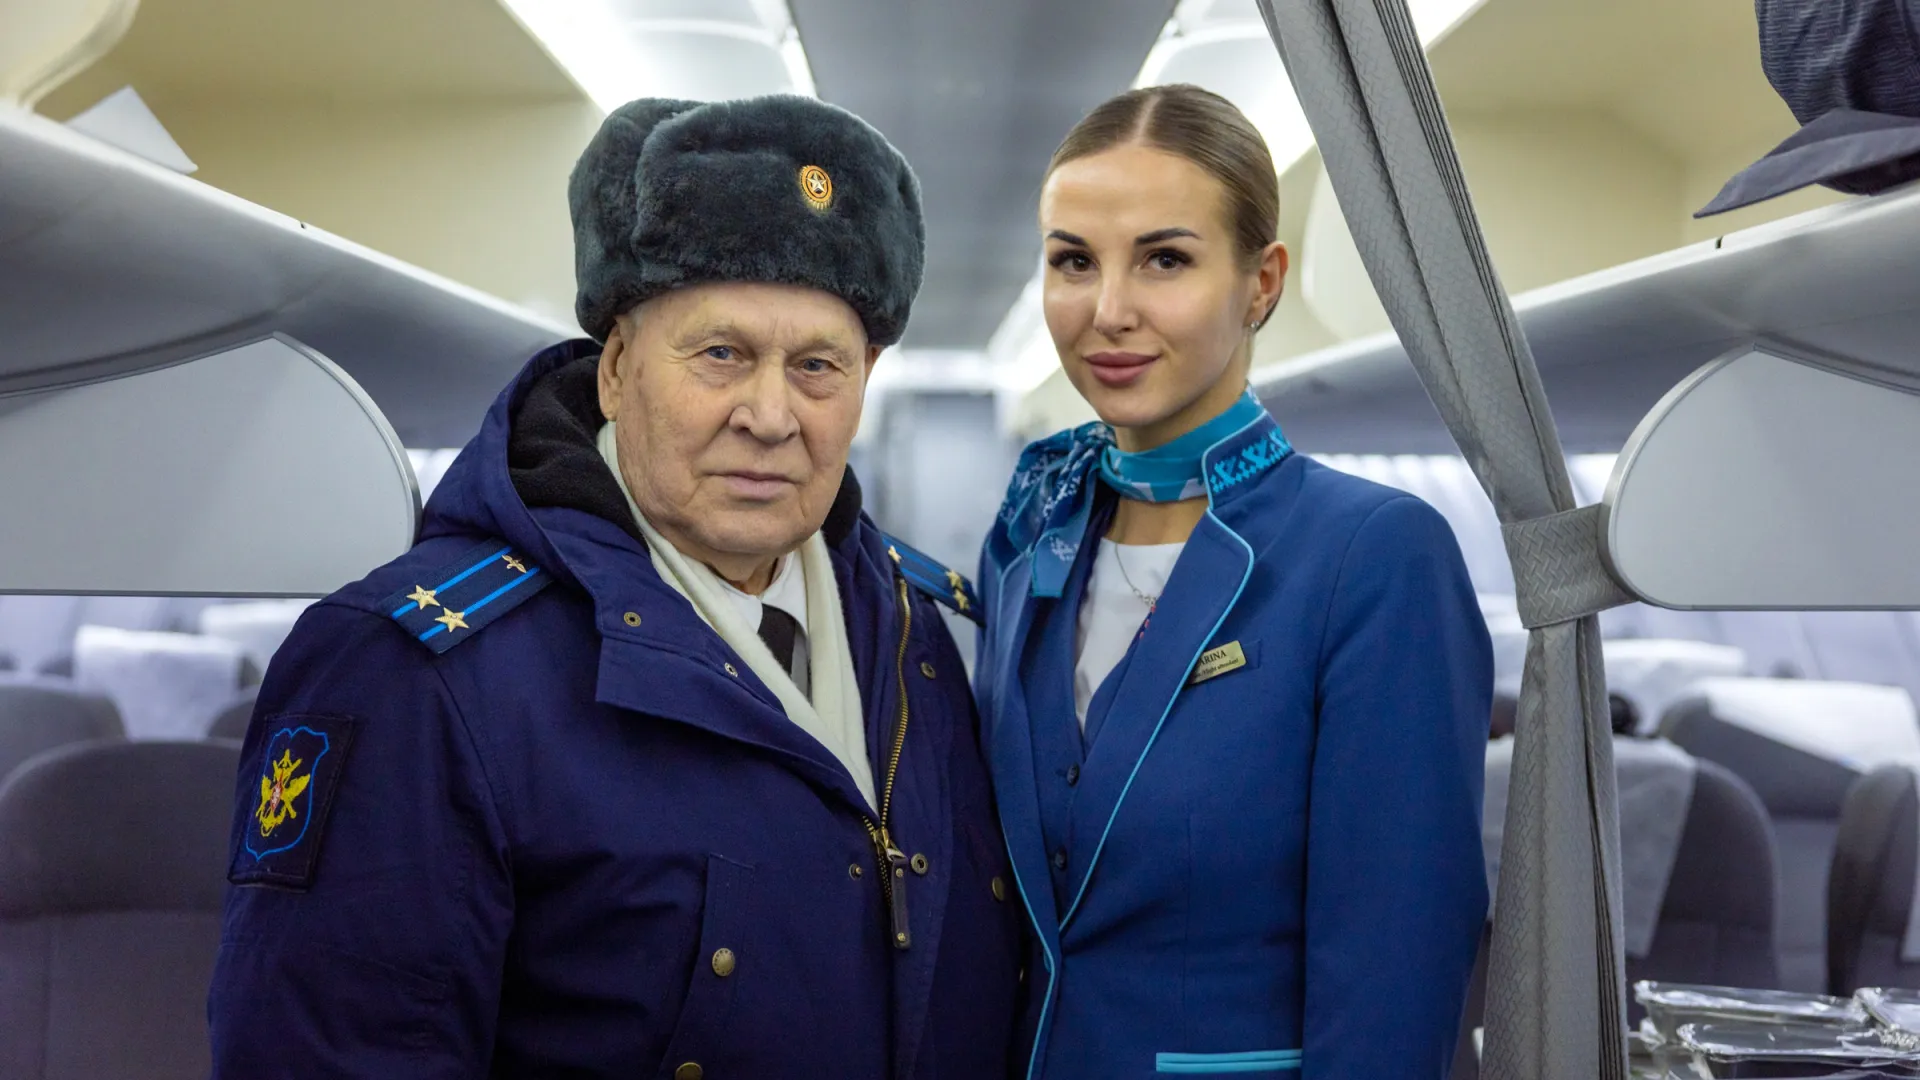 Стюардессы были рады сделать фото на память с Героем России. Фото: Федор Воронов / «Ямал-Медиа»